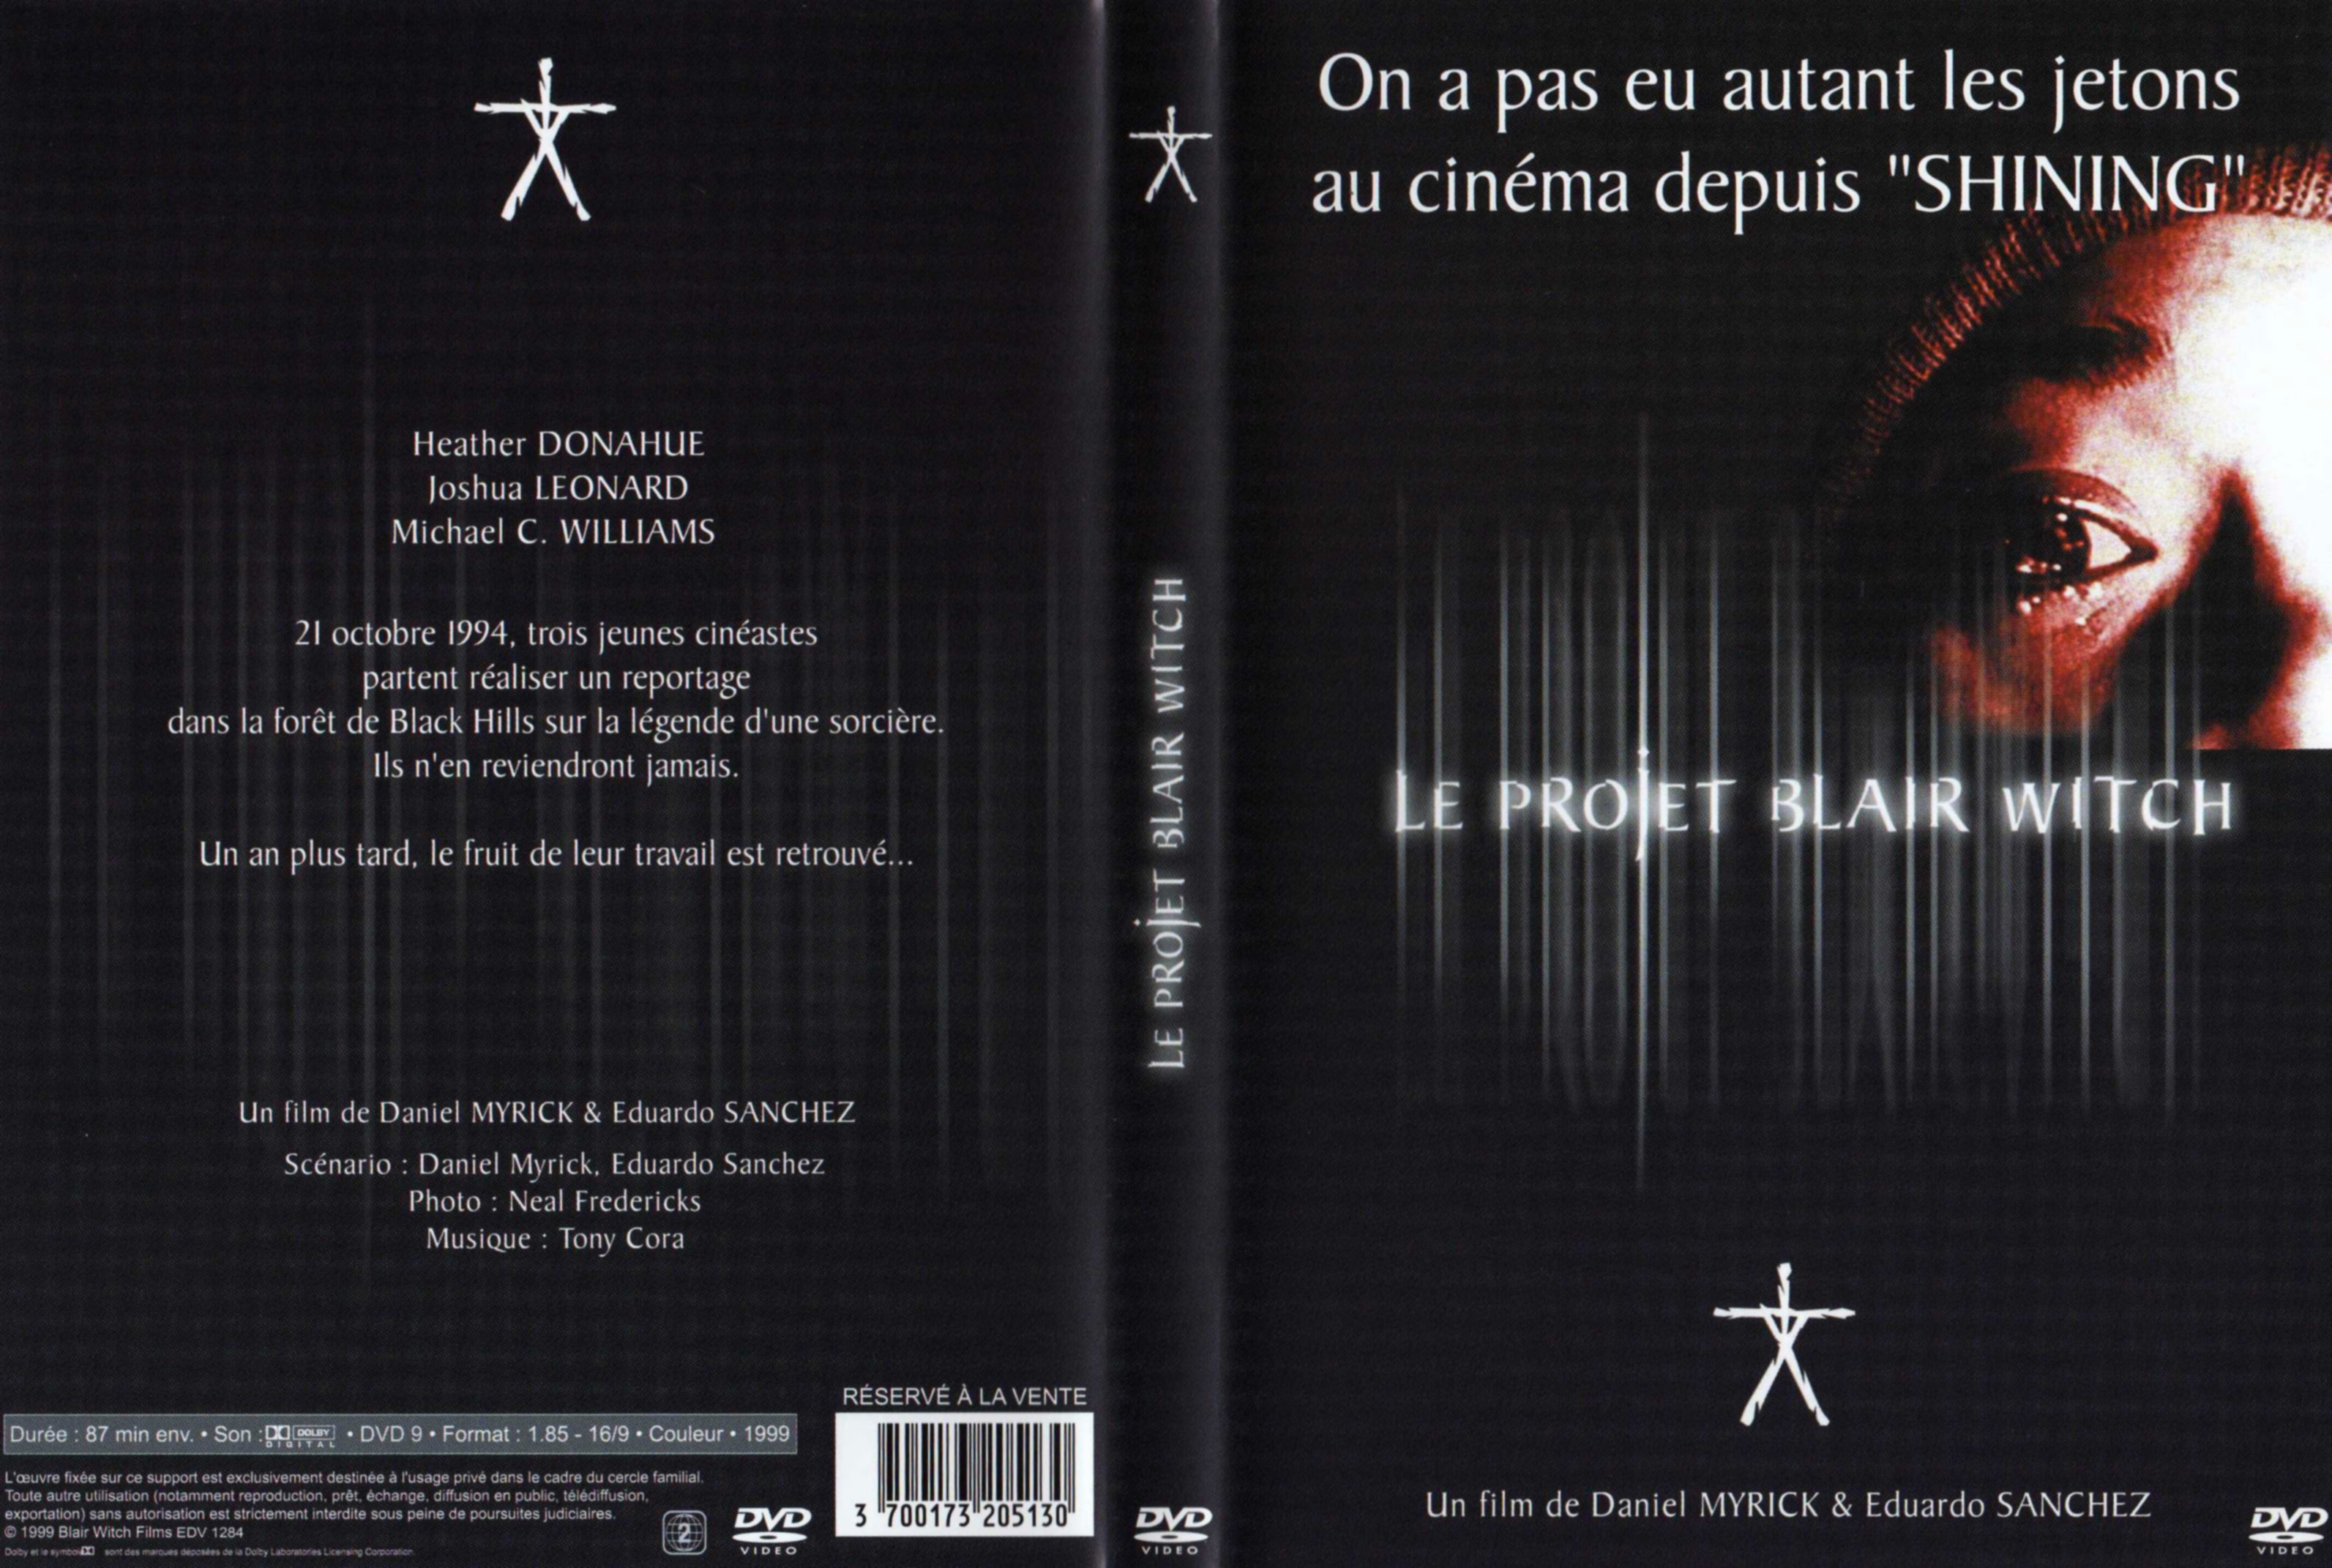 Jaquette DVD Le projet Blair Witch v2